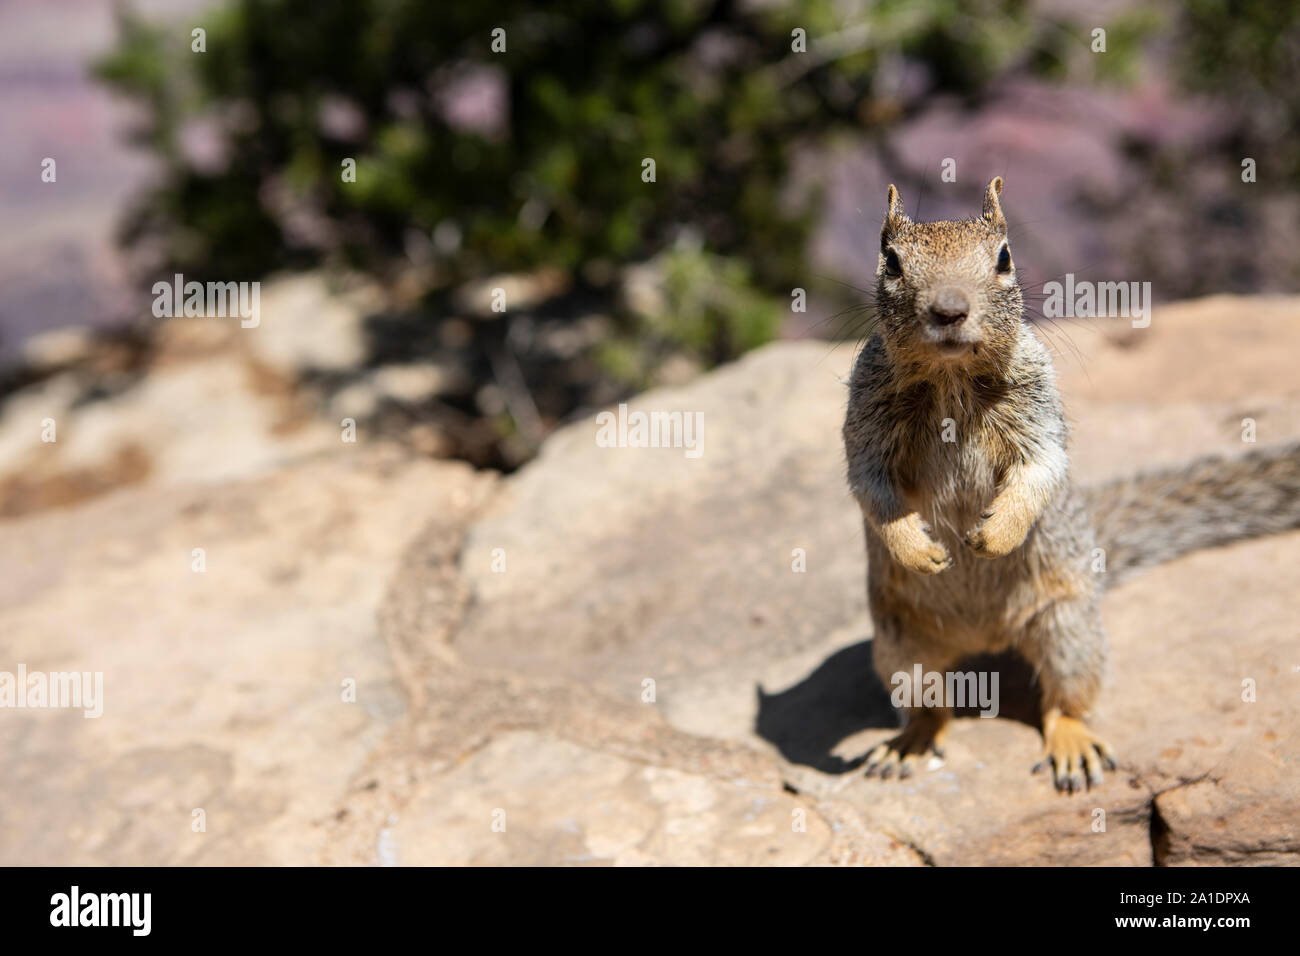 Ein Squirrel, ein amerikanisches Eichhörnchen, bettelt auf einer Mauer am Grand Canyon nach Fressen. Dabei hat es keine Scheu und wird oft aggressiv. Stock Photo